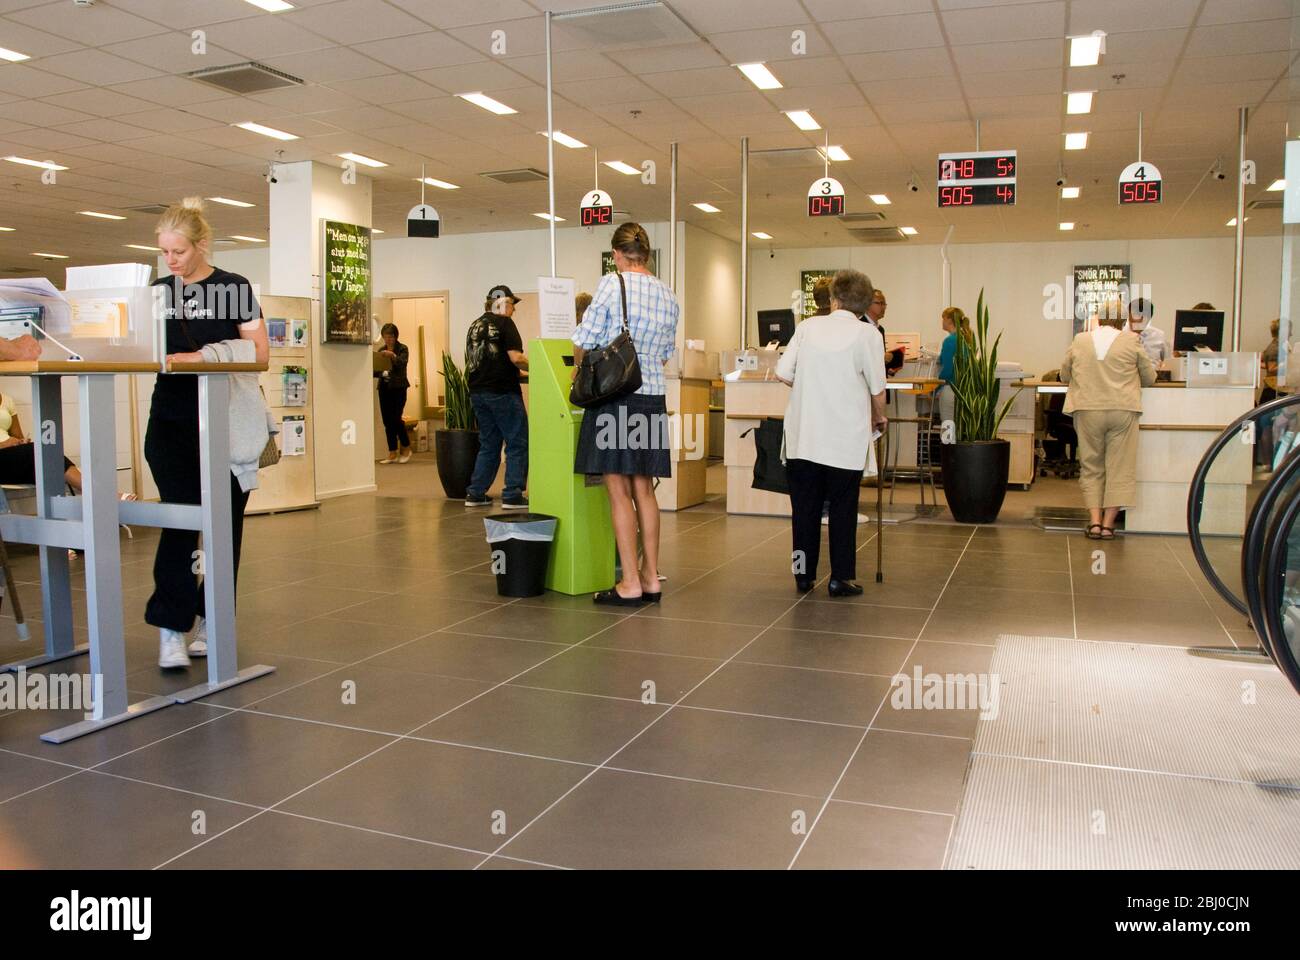 Innenansicht der Bank in Göteborg, Schweden mit typischen Kunden. - Stockfoto